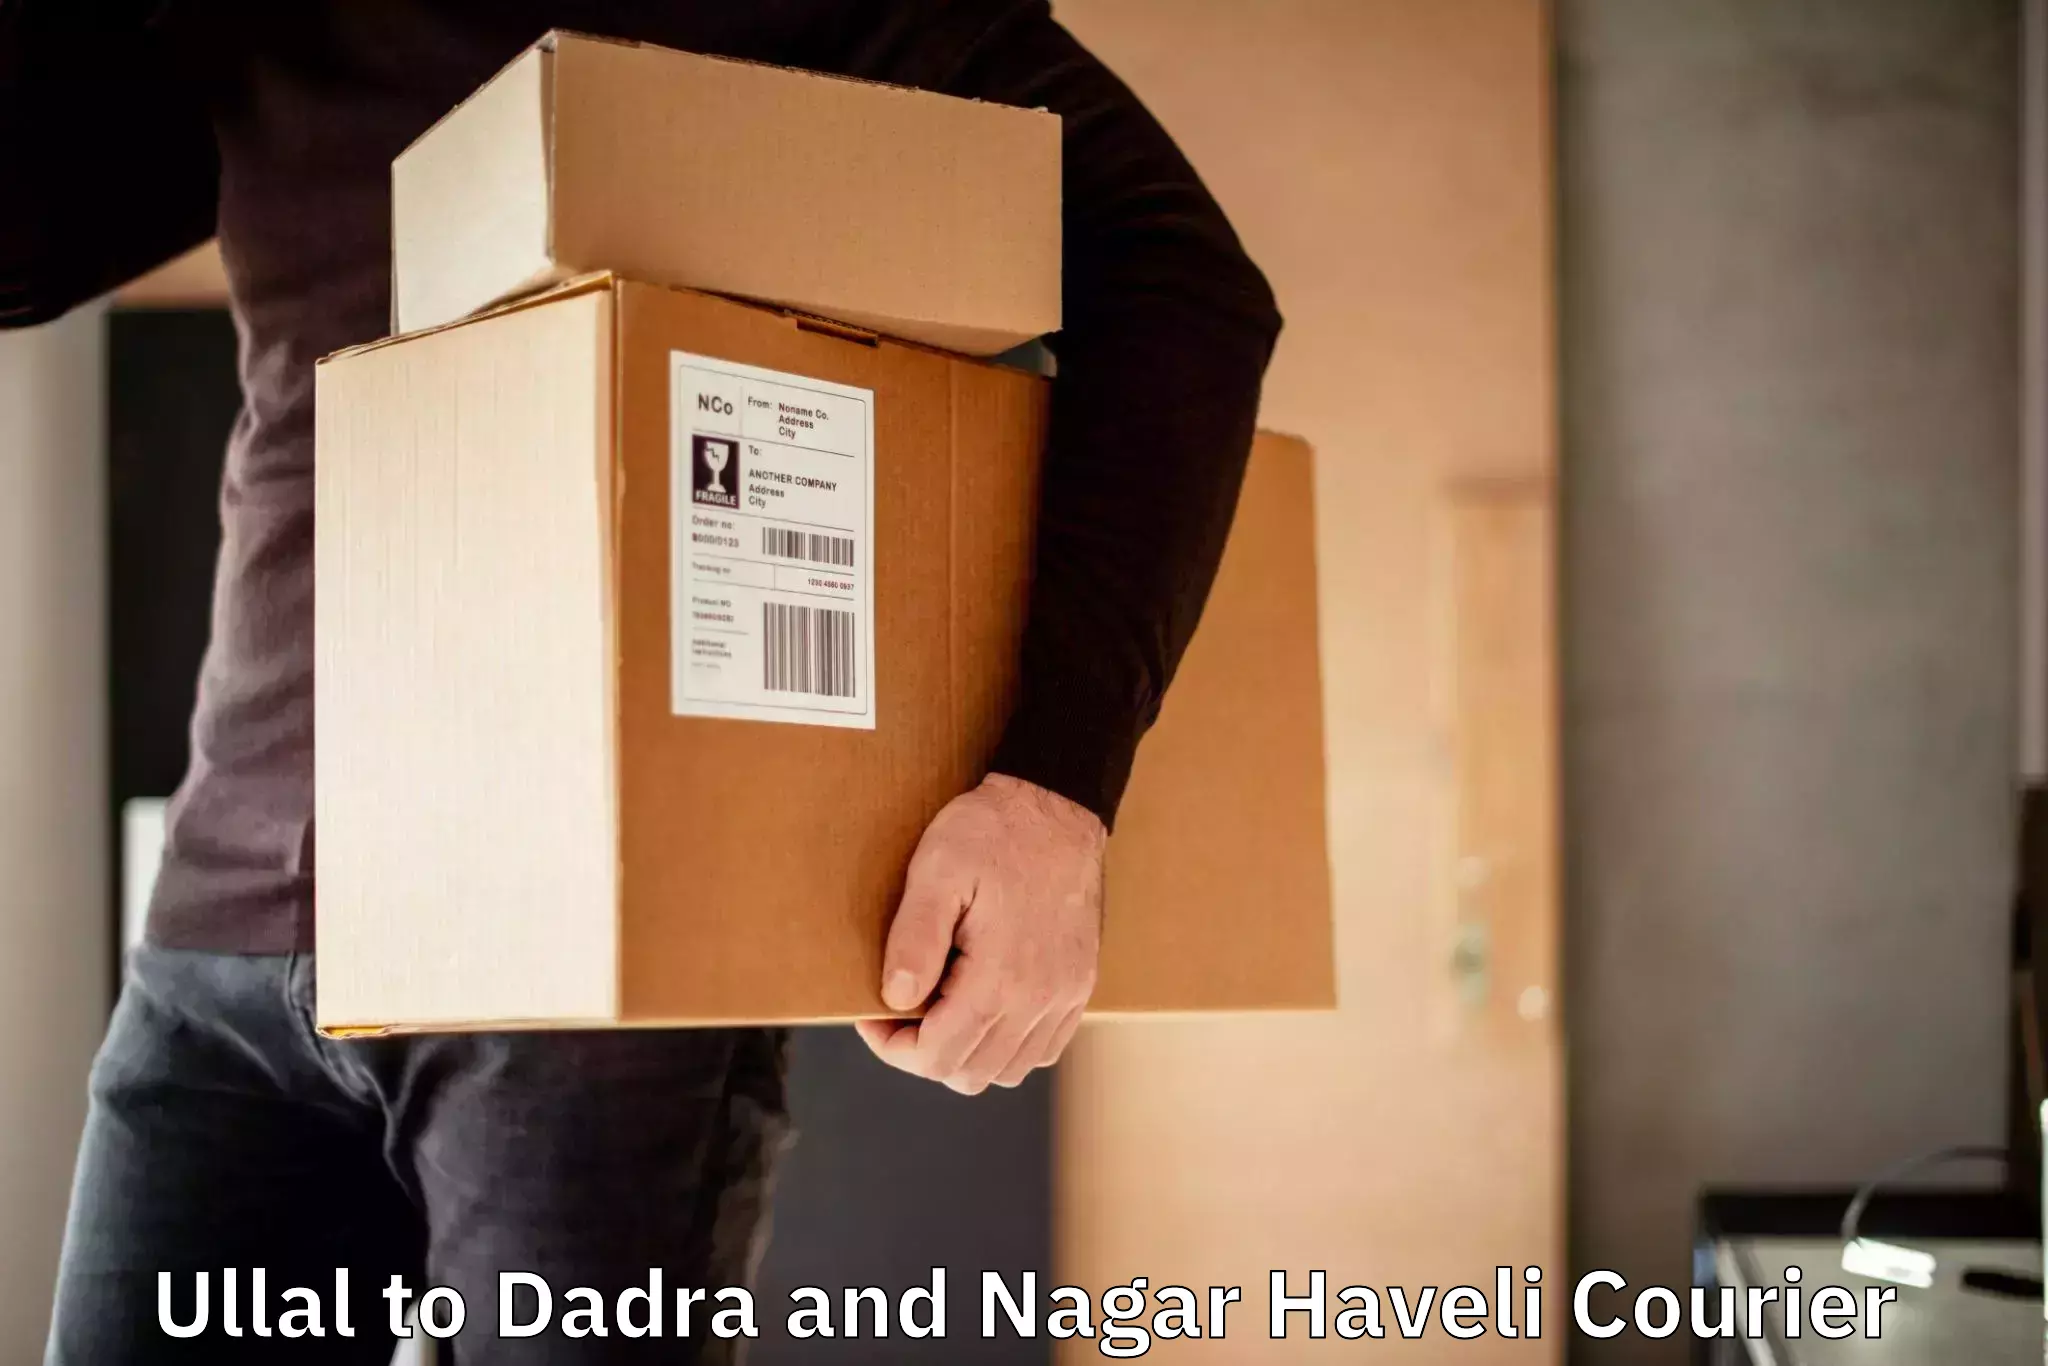 Global delivery options Ullal to Dadra and Nagar Haveli